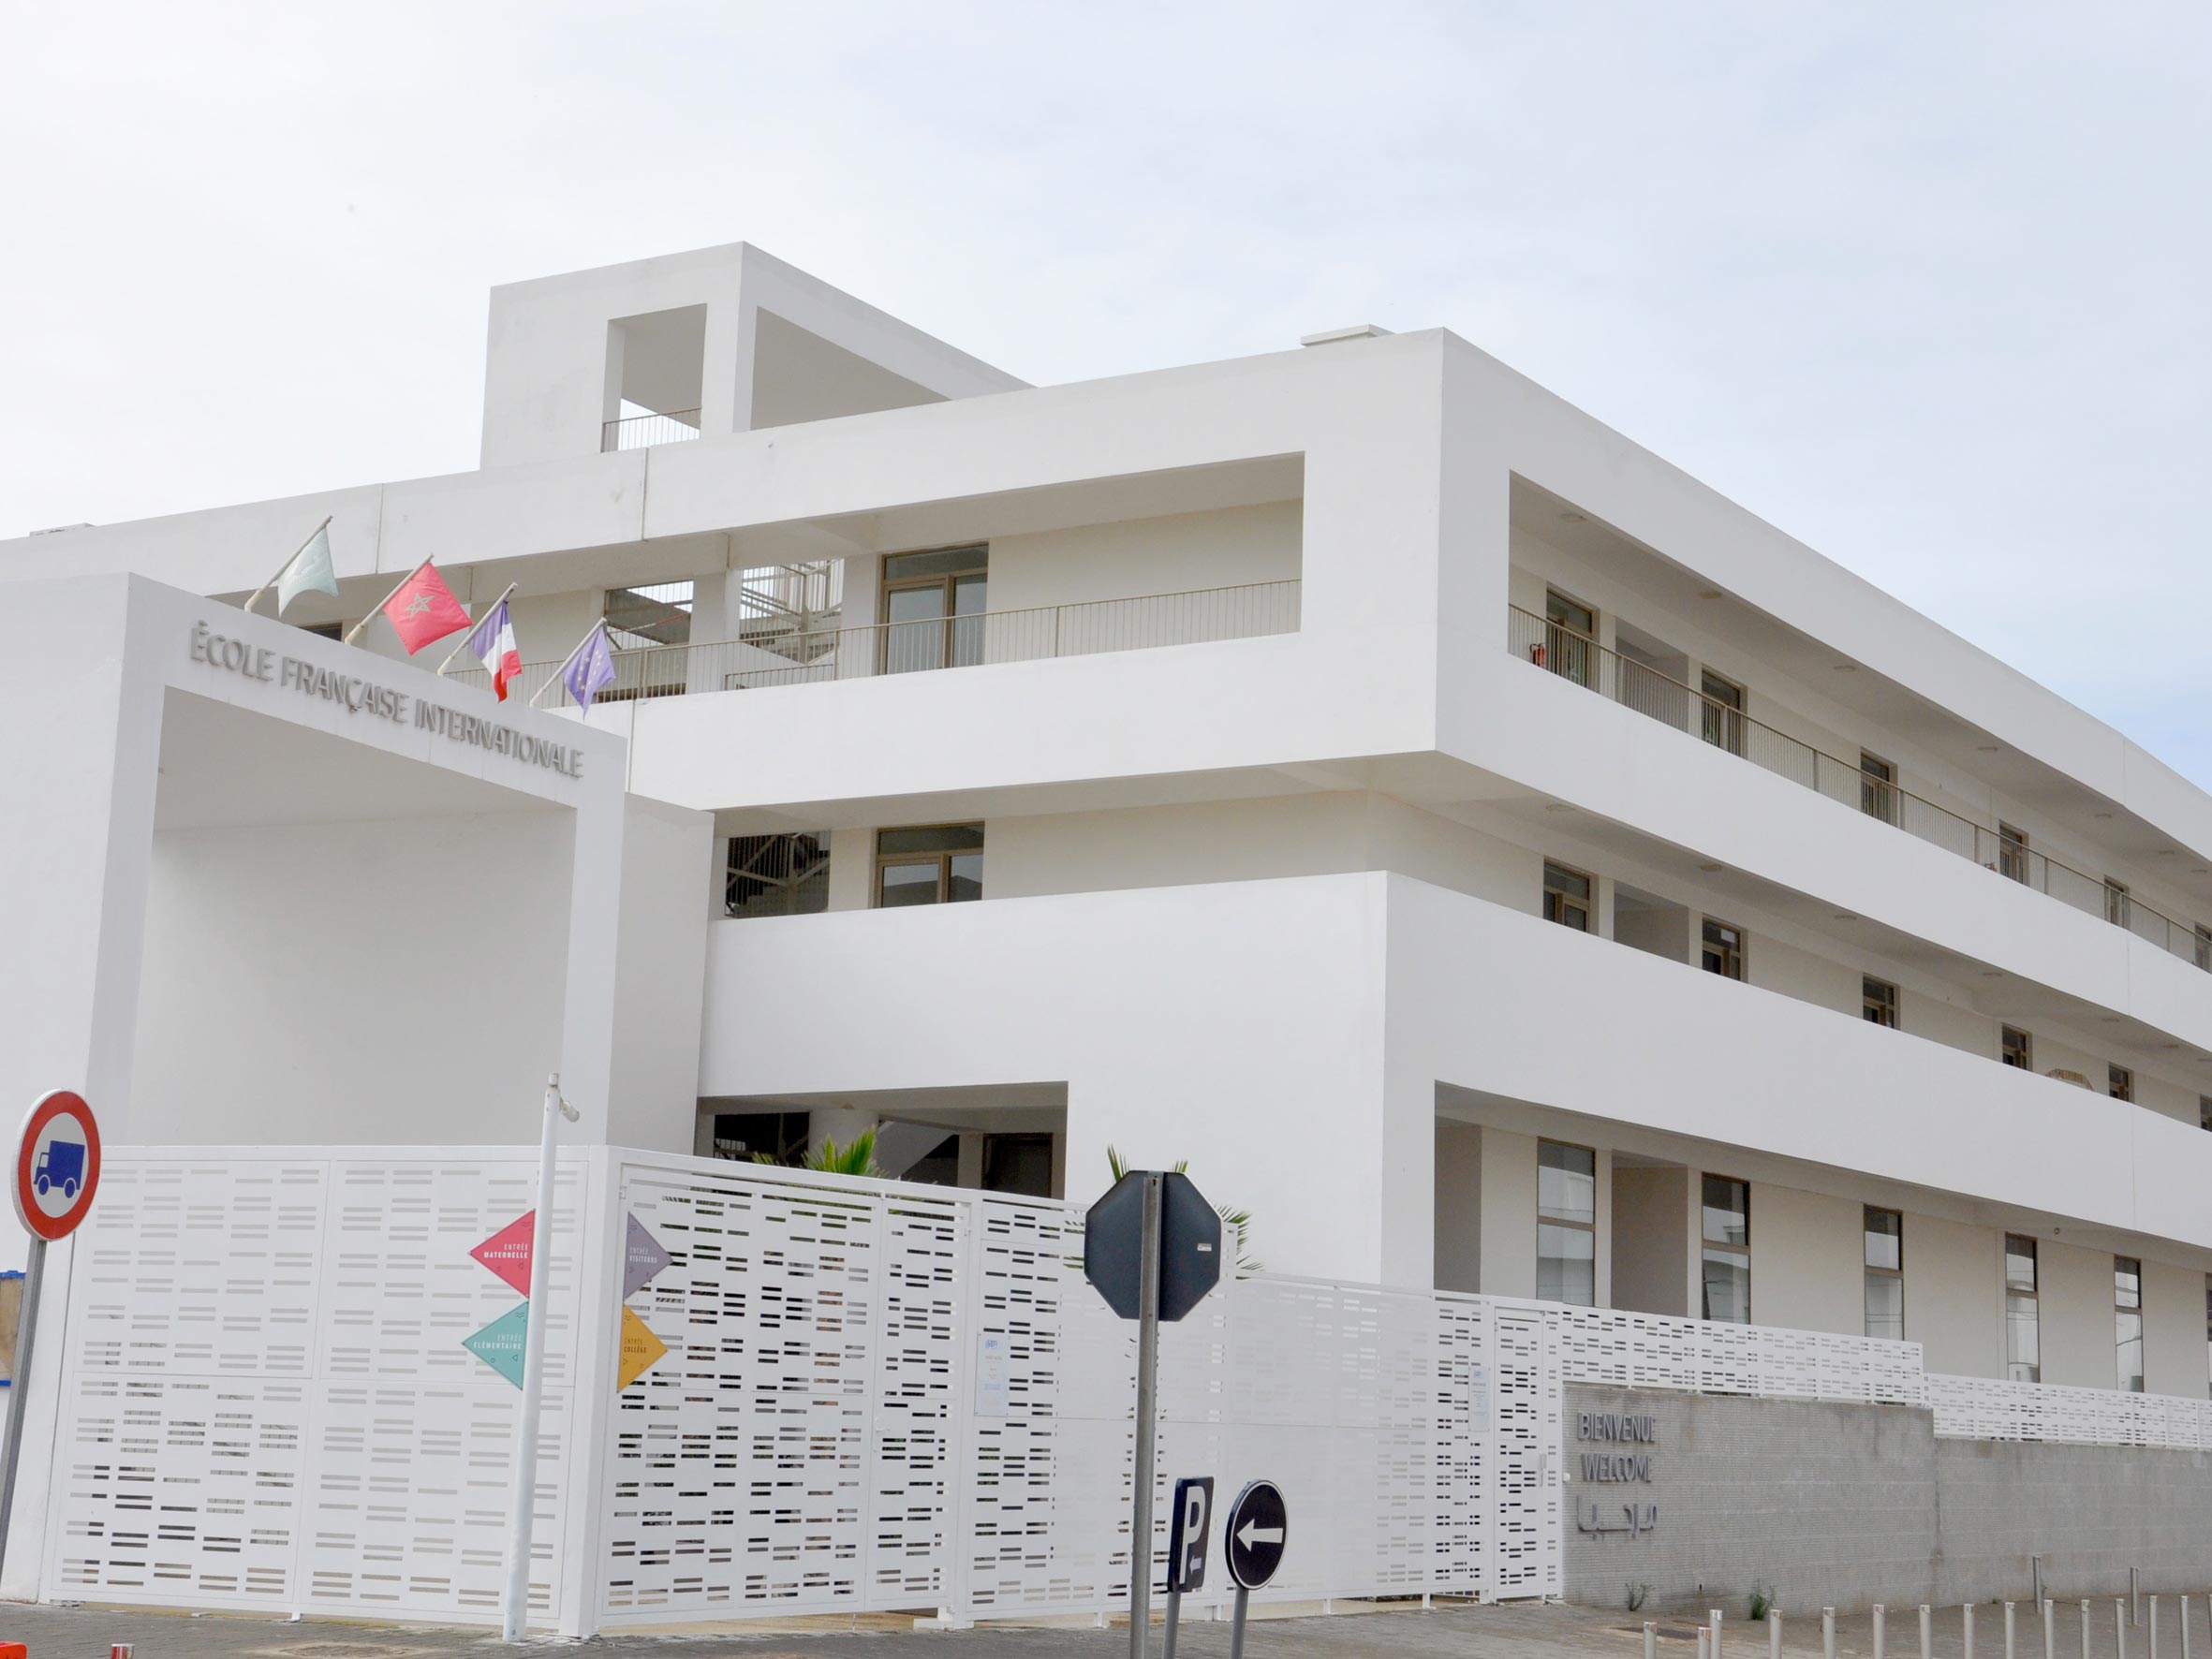 Ouverture de l'Ecole Française Internationale de Casablanca (EFI Casablanca) dans le quartier Anfa Clubs